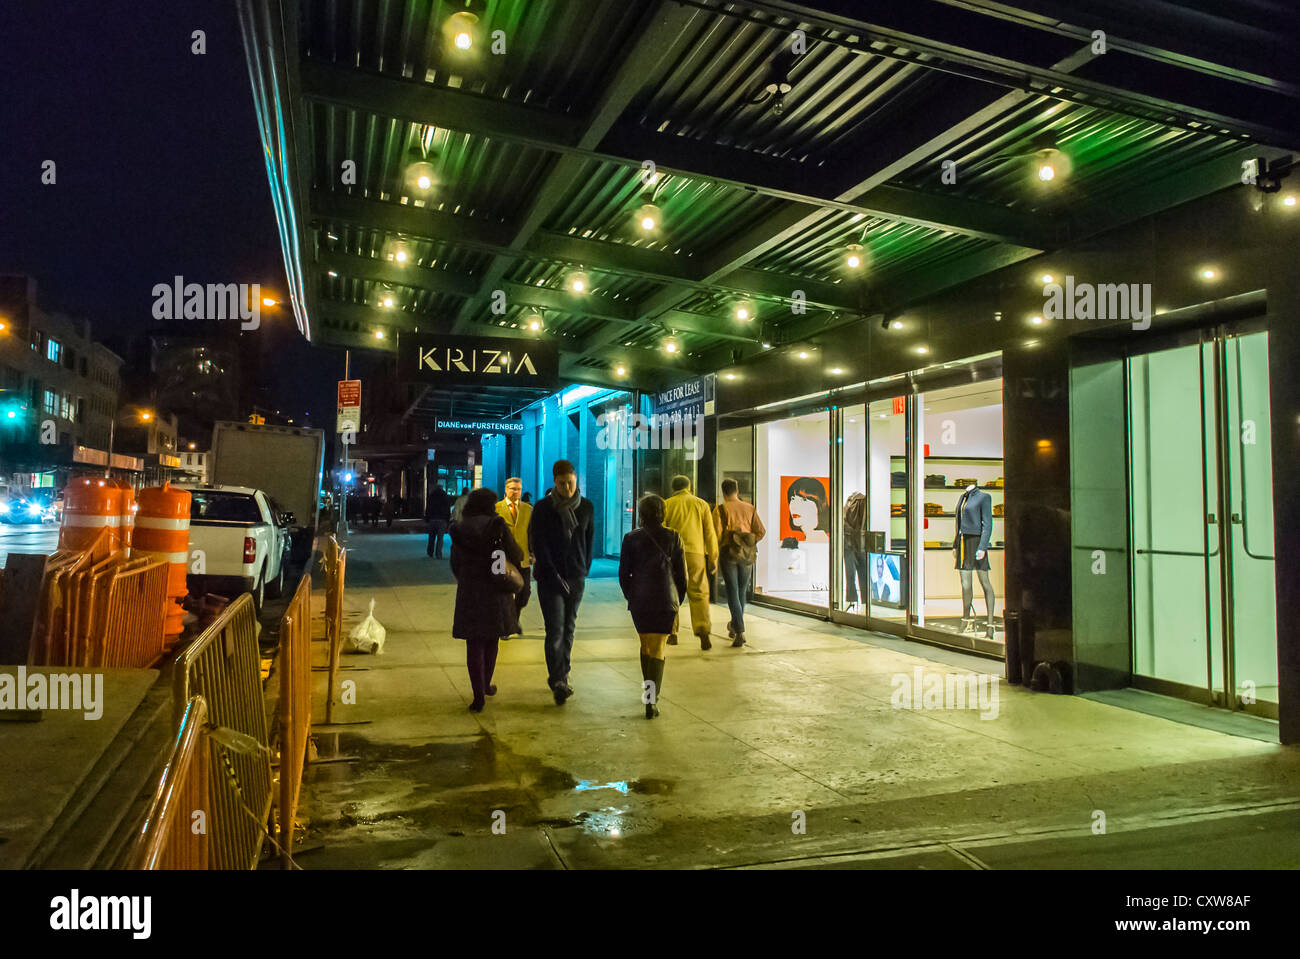 Nueva York, NY, EE.UU., tiendas de gente, caminar por la noche cerca, tienda  de ropa 'Krizia', escenas de la calle, en Manhattan, el distrito de  embalaje de carne, caminata urbana, luces al